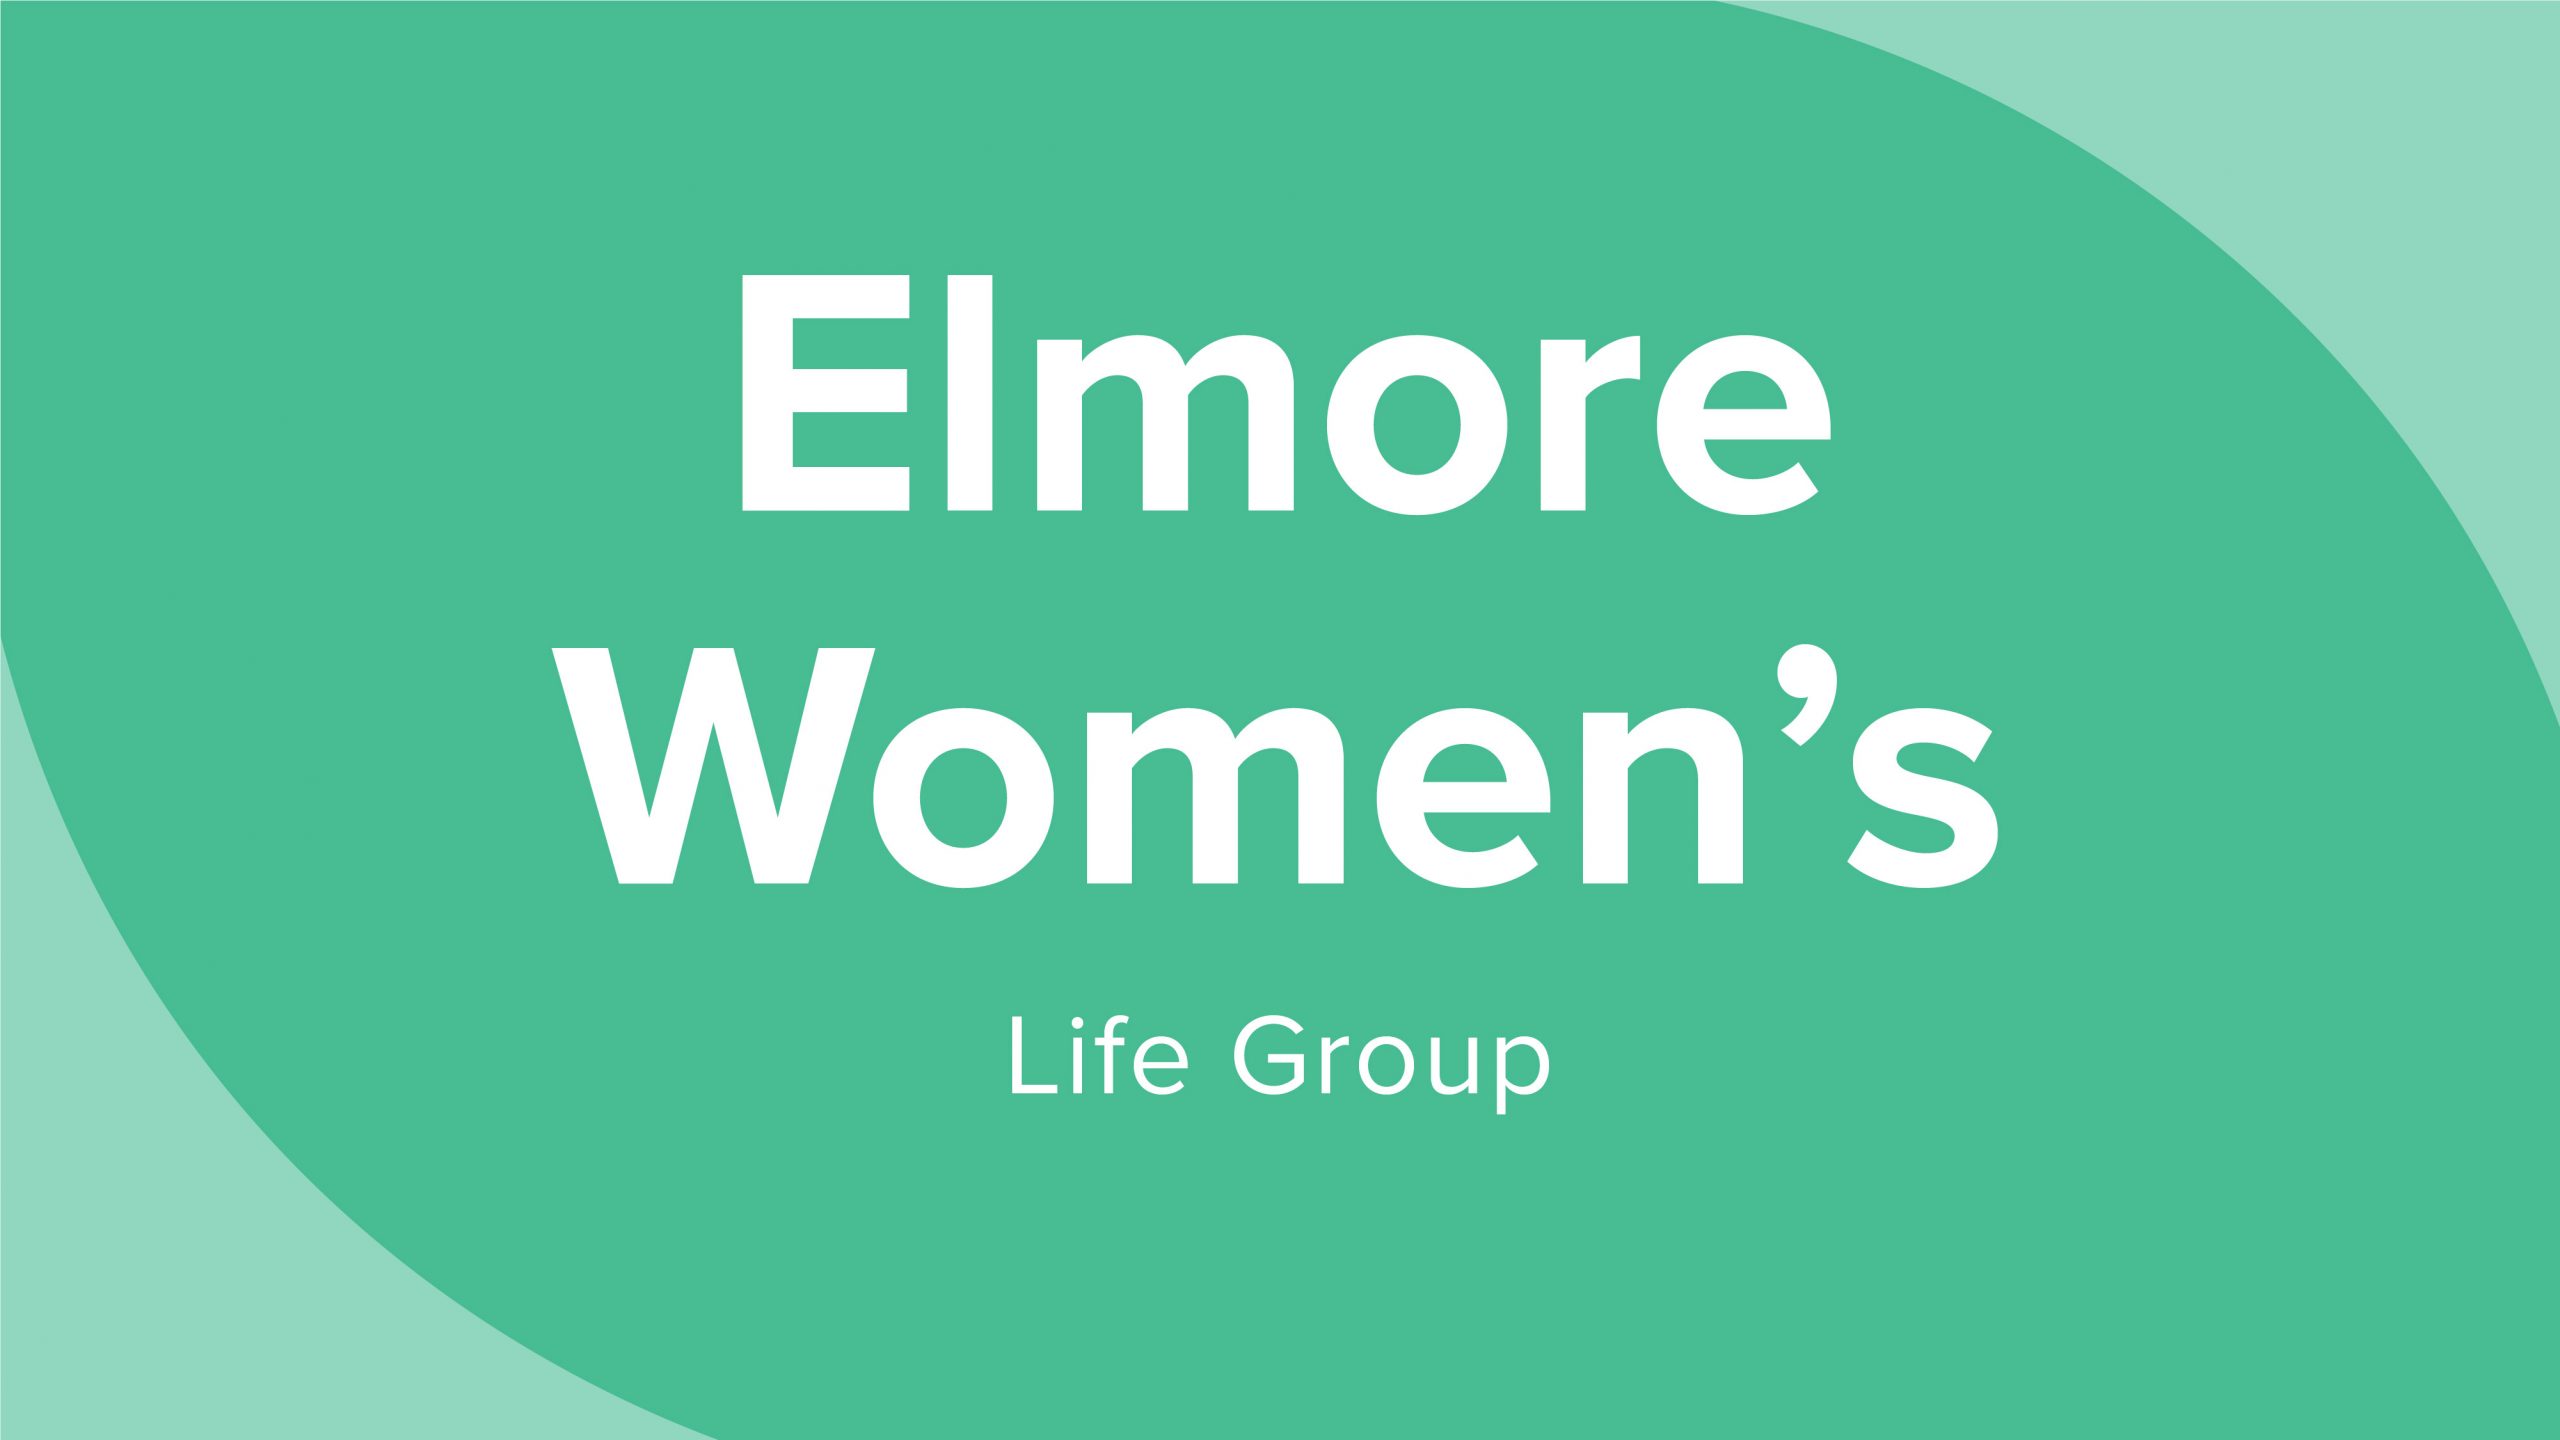 Elmore Women's Life Group